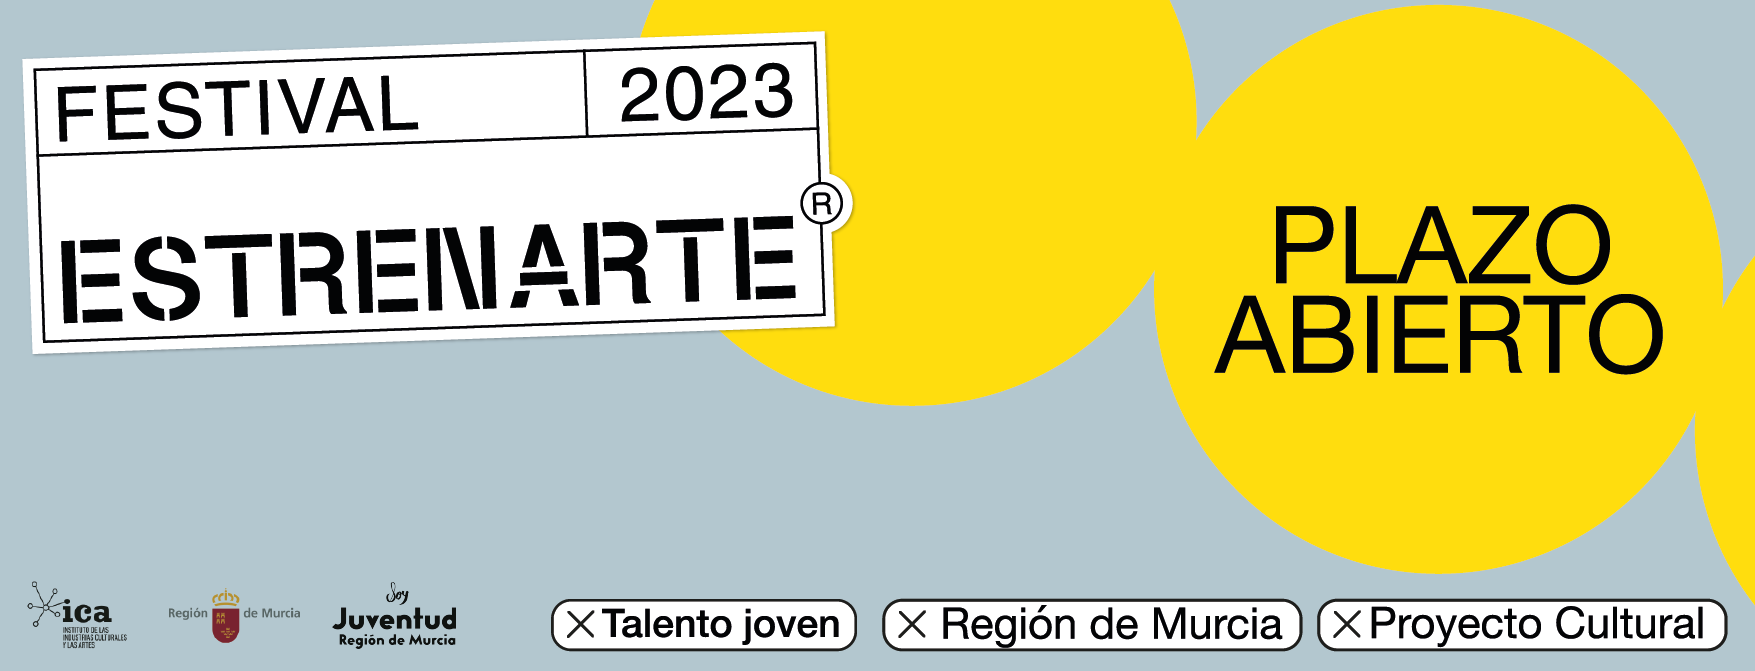 Festival EstrenARTE 2023